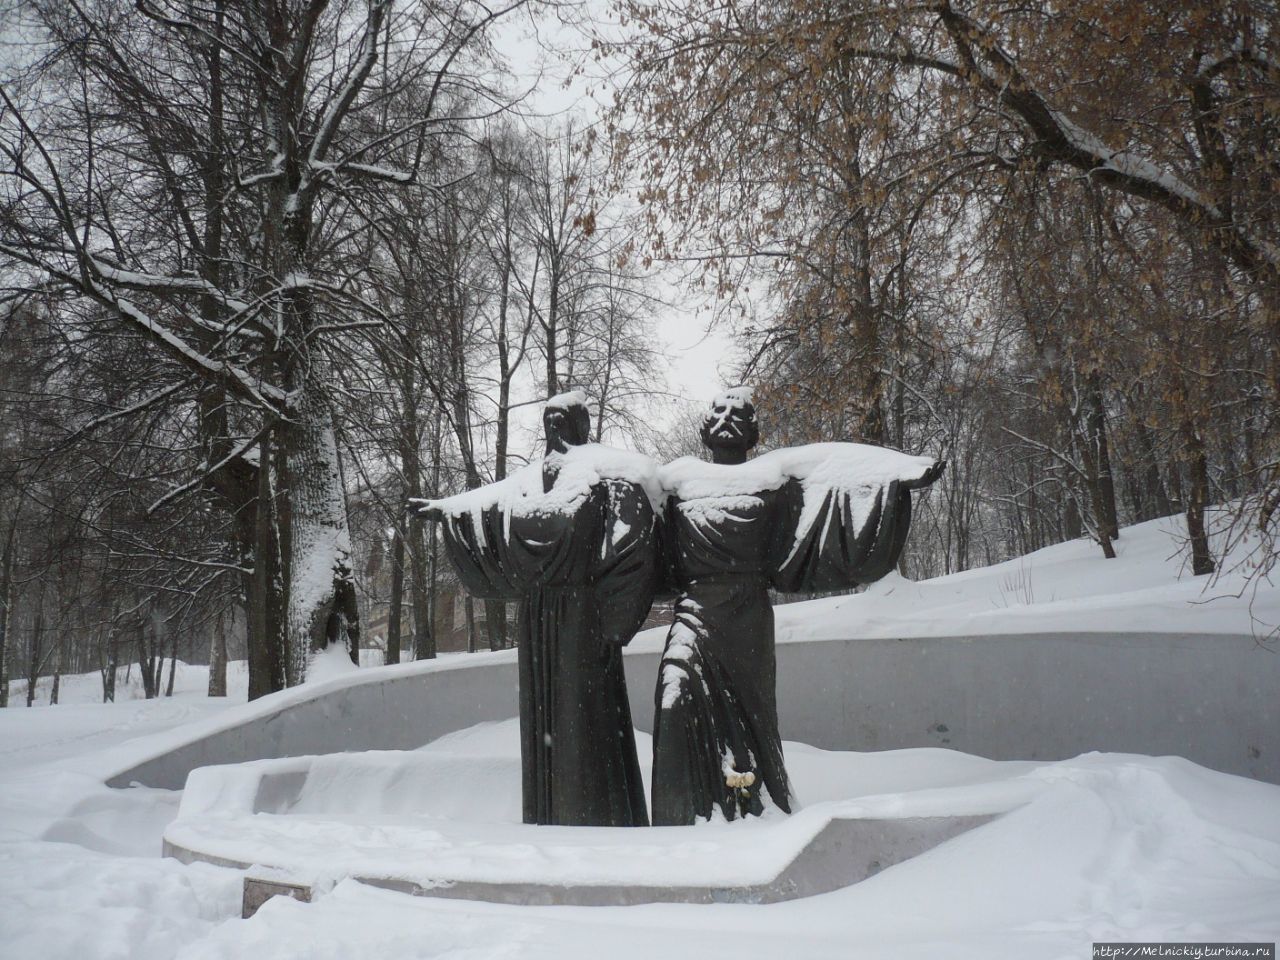 Памятник основателям Череповца - инокам Феодосию и Афанасию